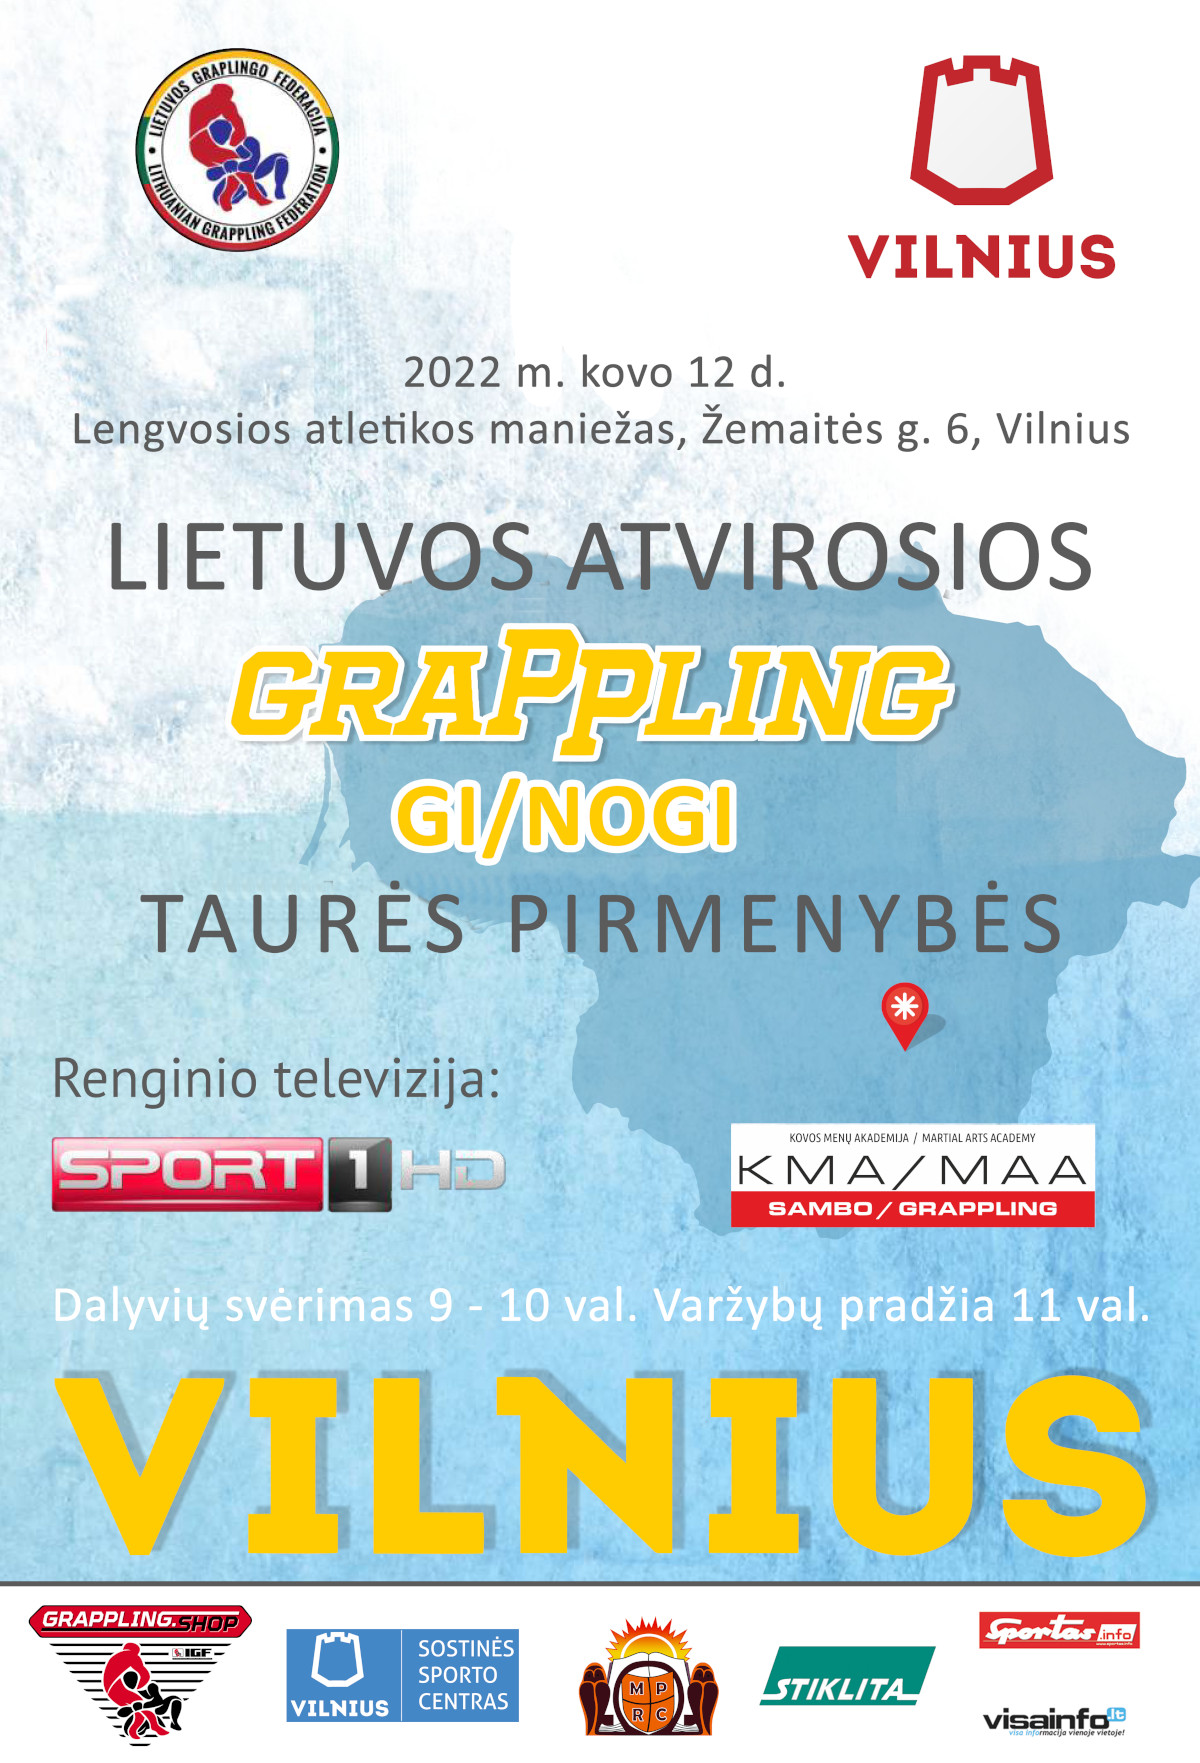 Lietuvos atvirosios Grappling Gi/Nogi taurės pirmenybės 2022